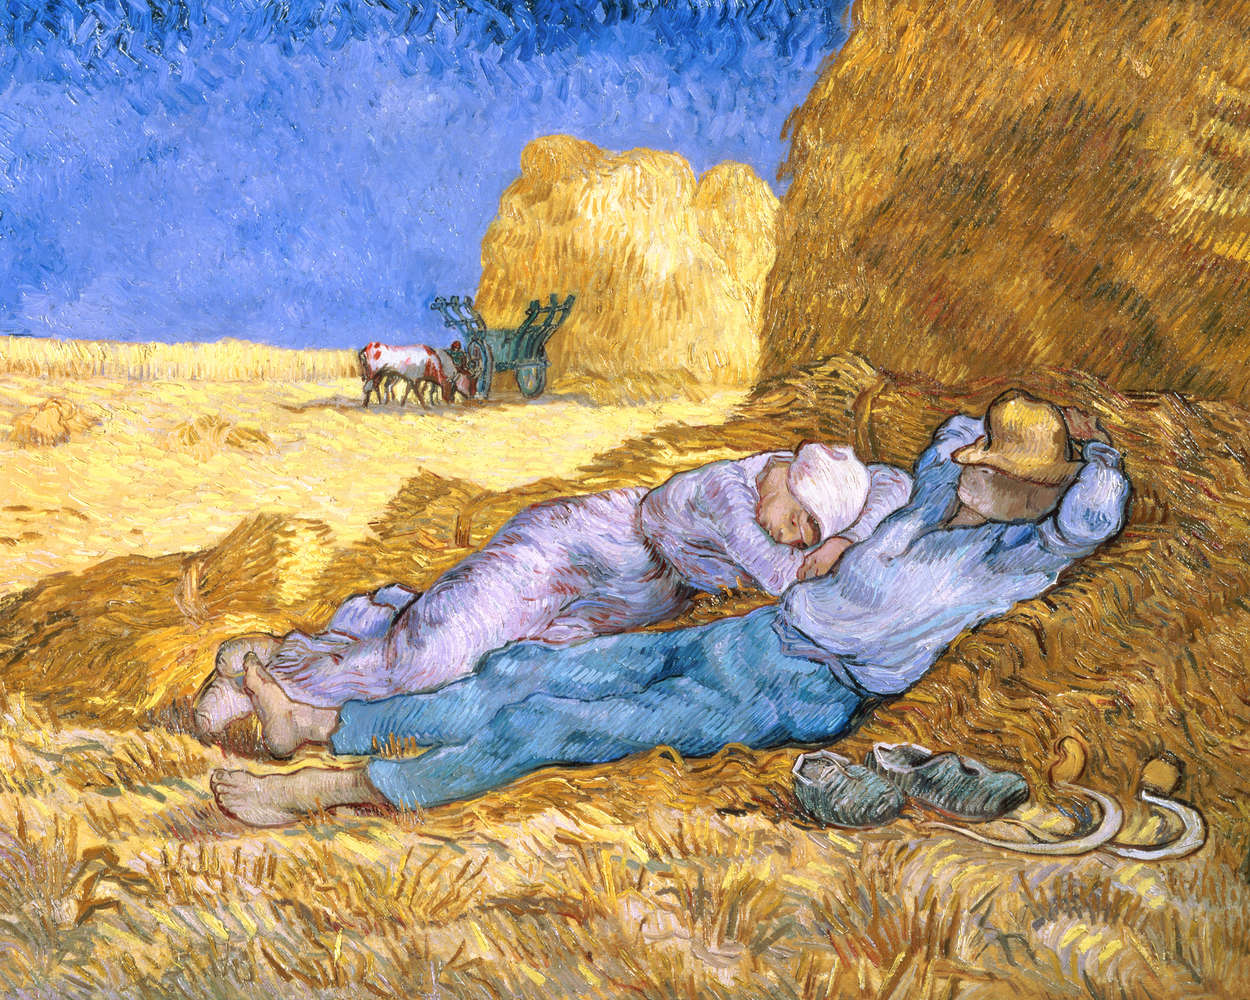             De Siësta naar Millet" muurschildering van Vincent van Gogh
        